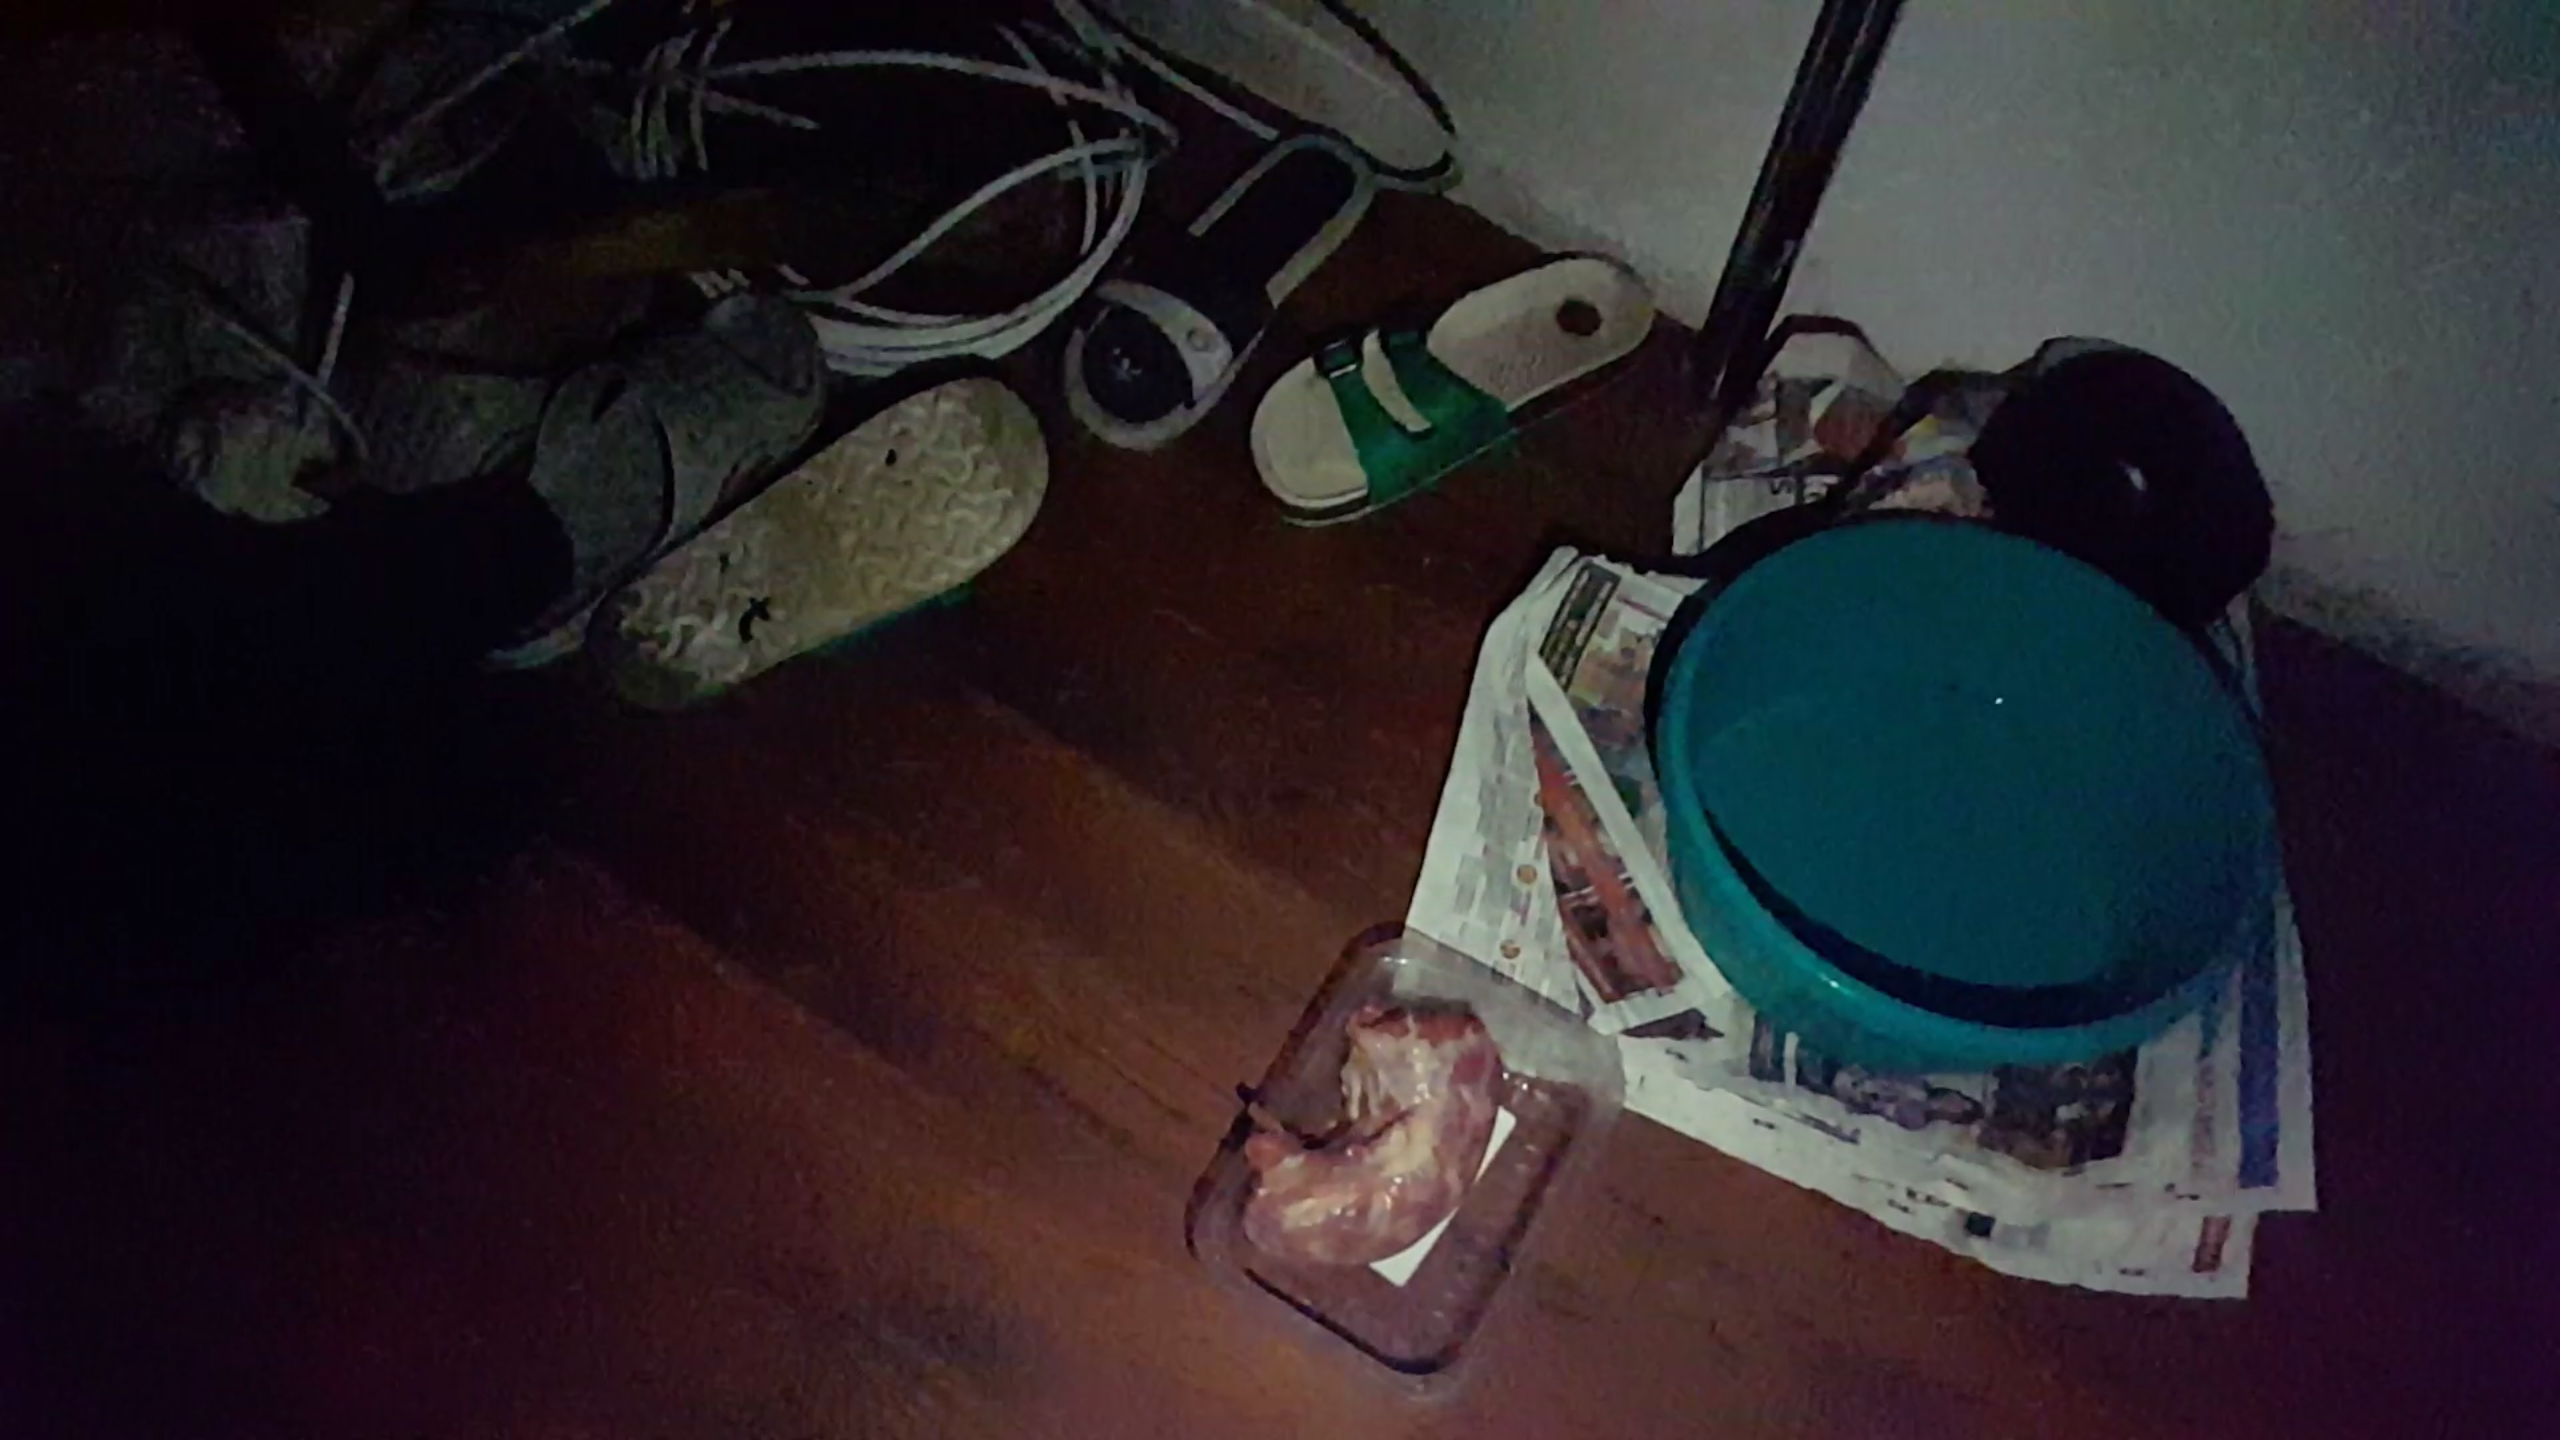 świeży mocz na podłodze w pomoeszczeniu, gdzie trzymany był Jaro.